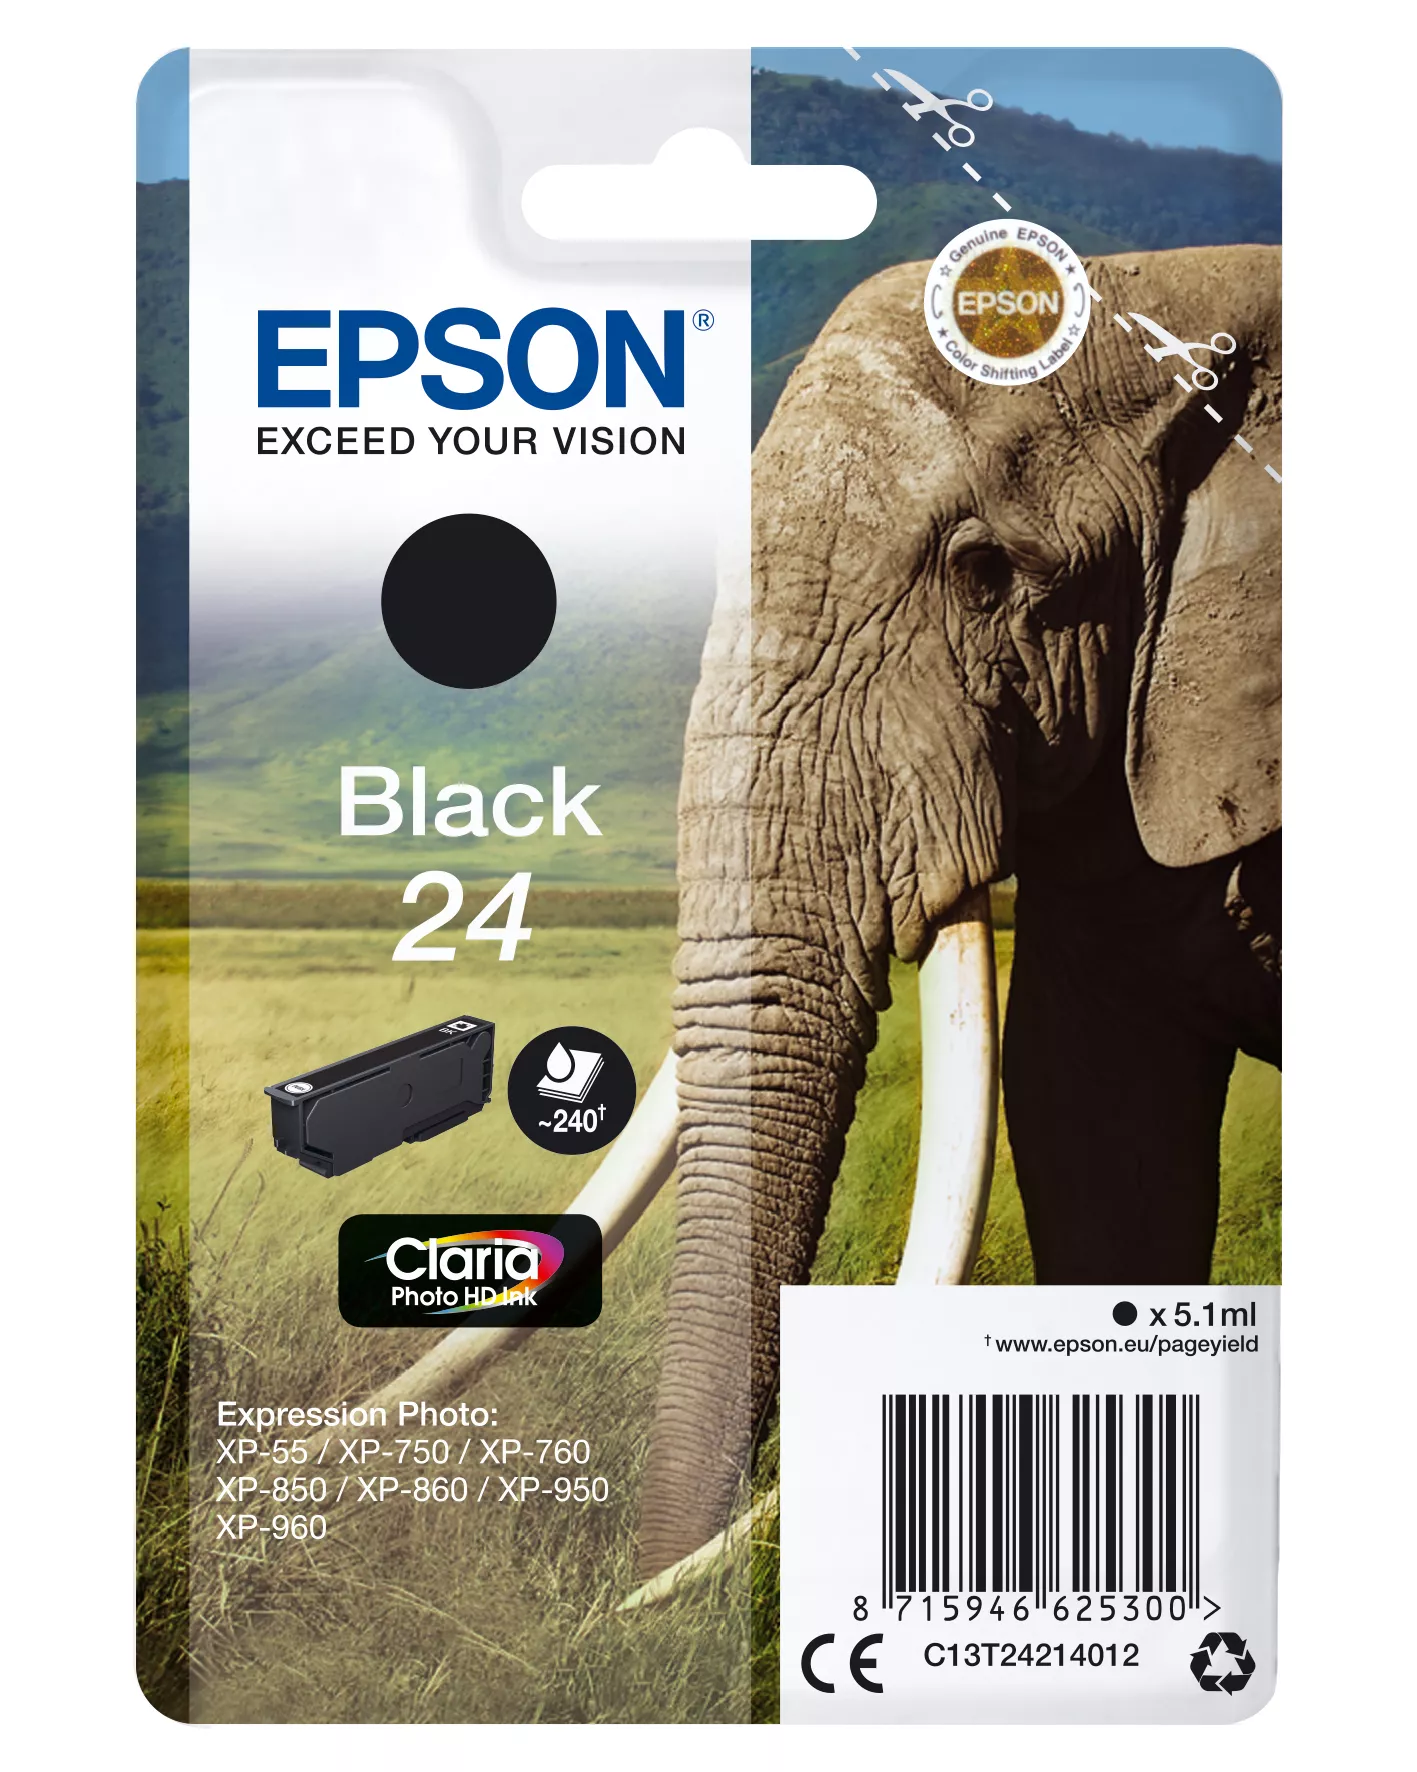 Achat EPSON 24 cartouche d encre noir capacité standard 5.1ml 240 sur hello RSE